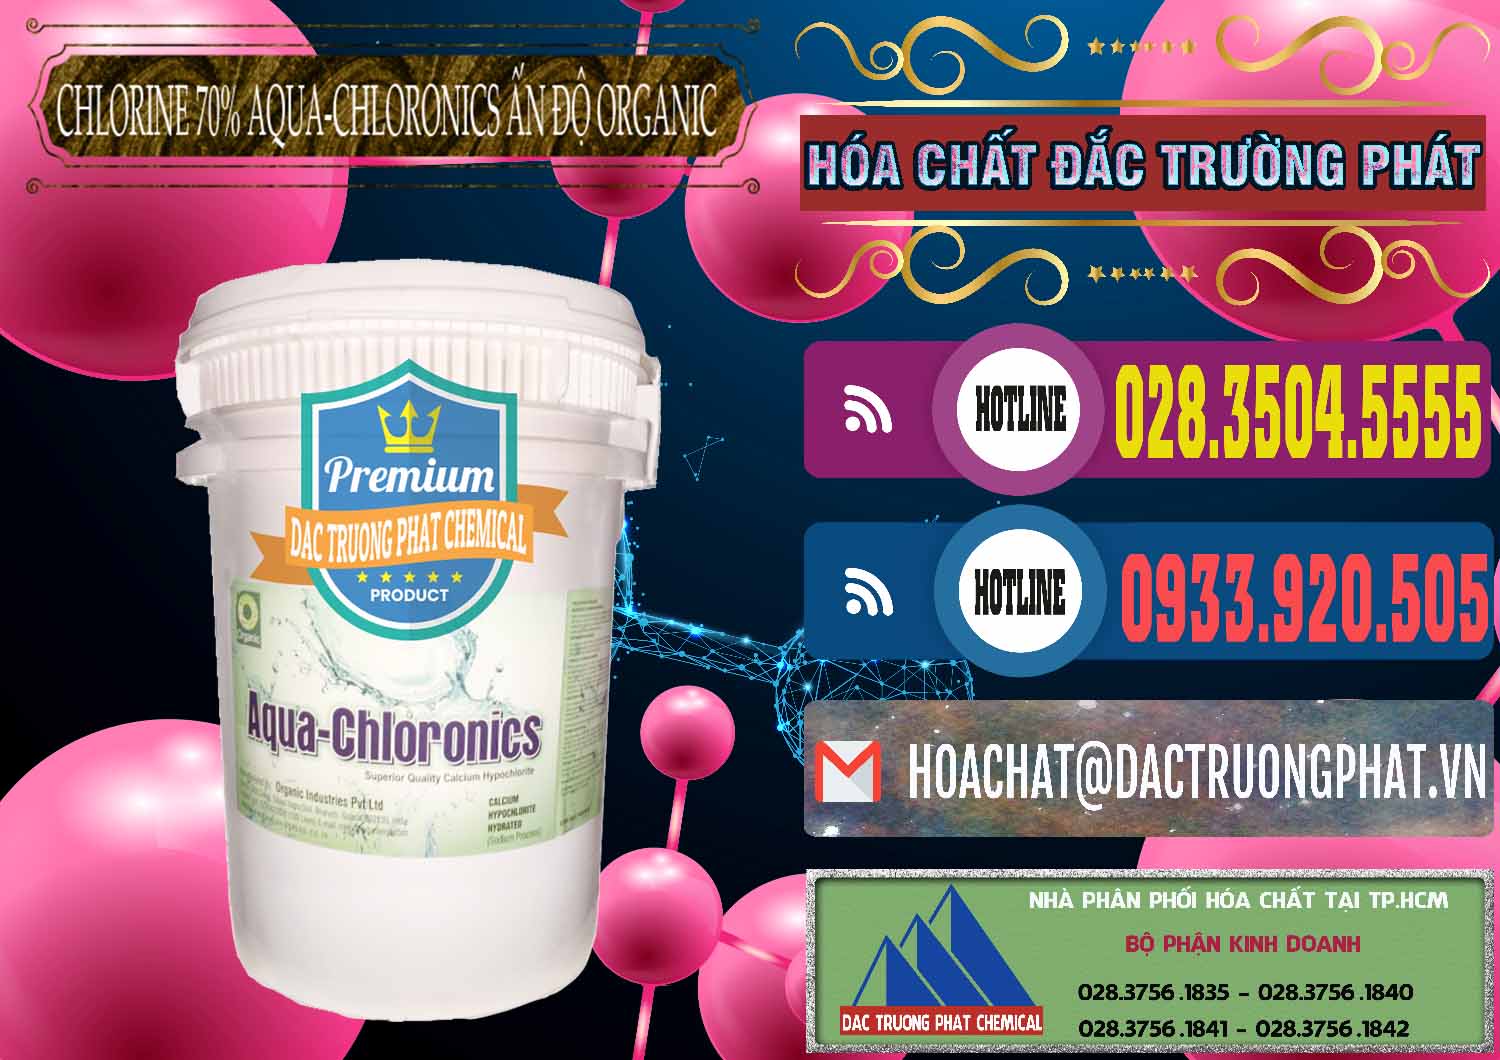 Cty chuyên cung ứng - bán Chlorine – Clorin 70% Aqua-Chloronics Ấn Độ Organic India - 0211 - Cty phân phối & bán hóa chất tại TP.HCM - muabanhoachat.com.vn